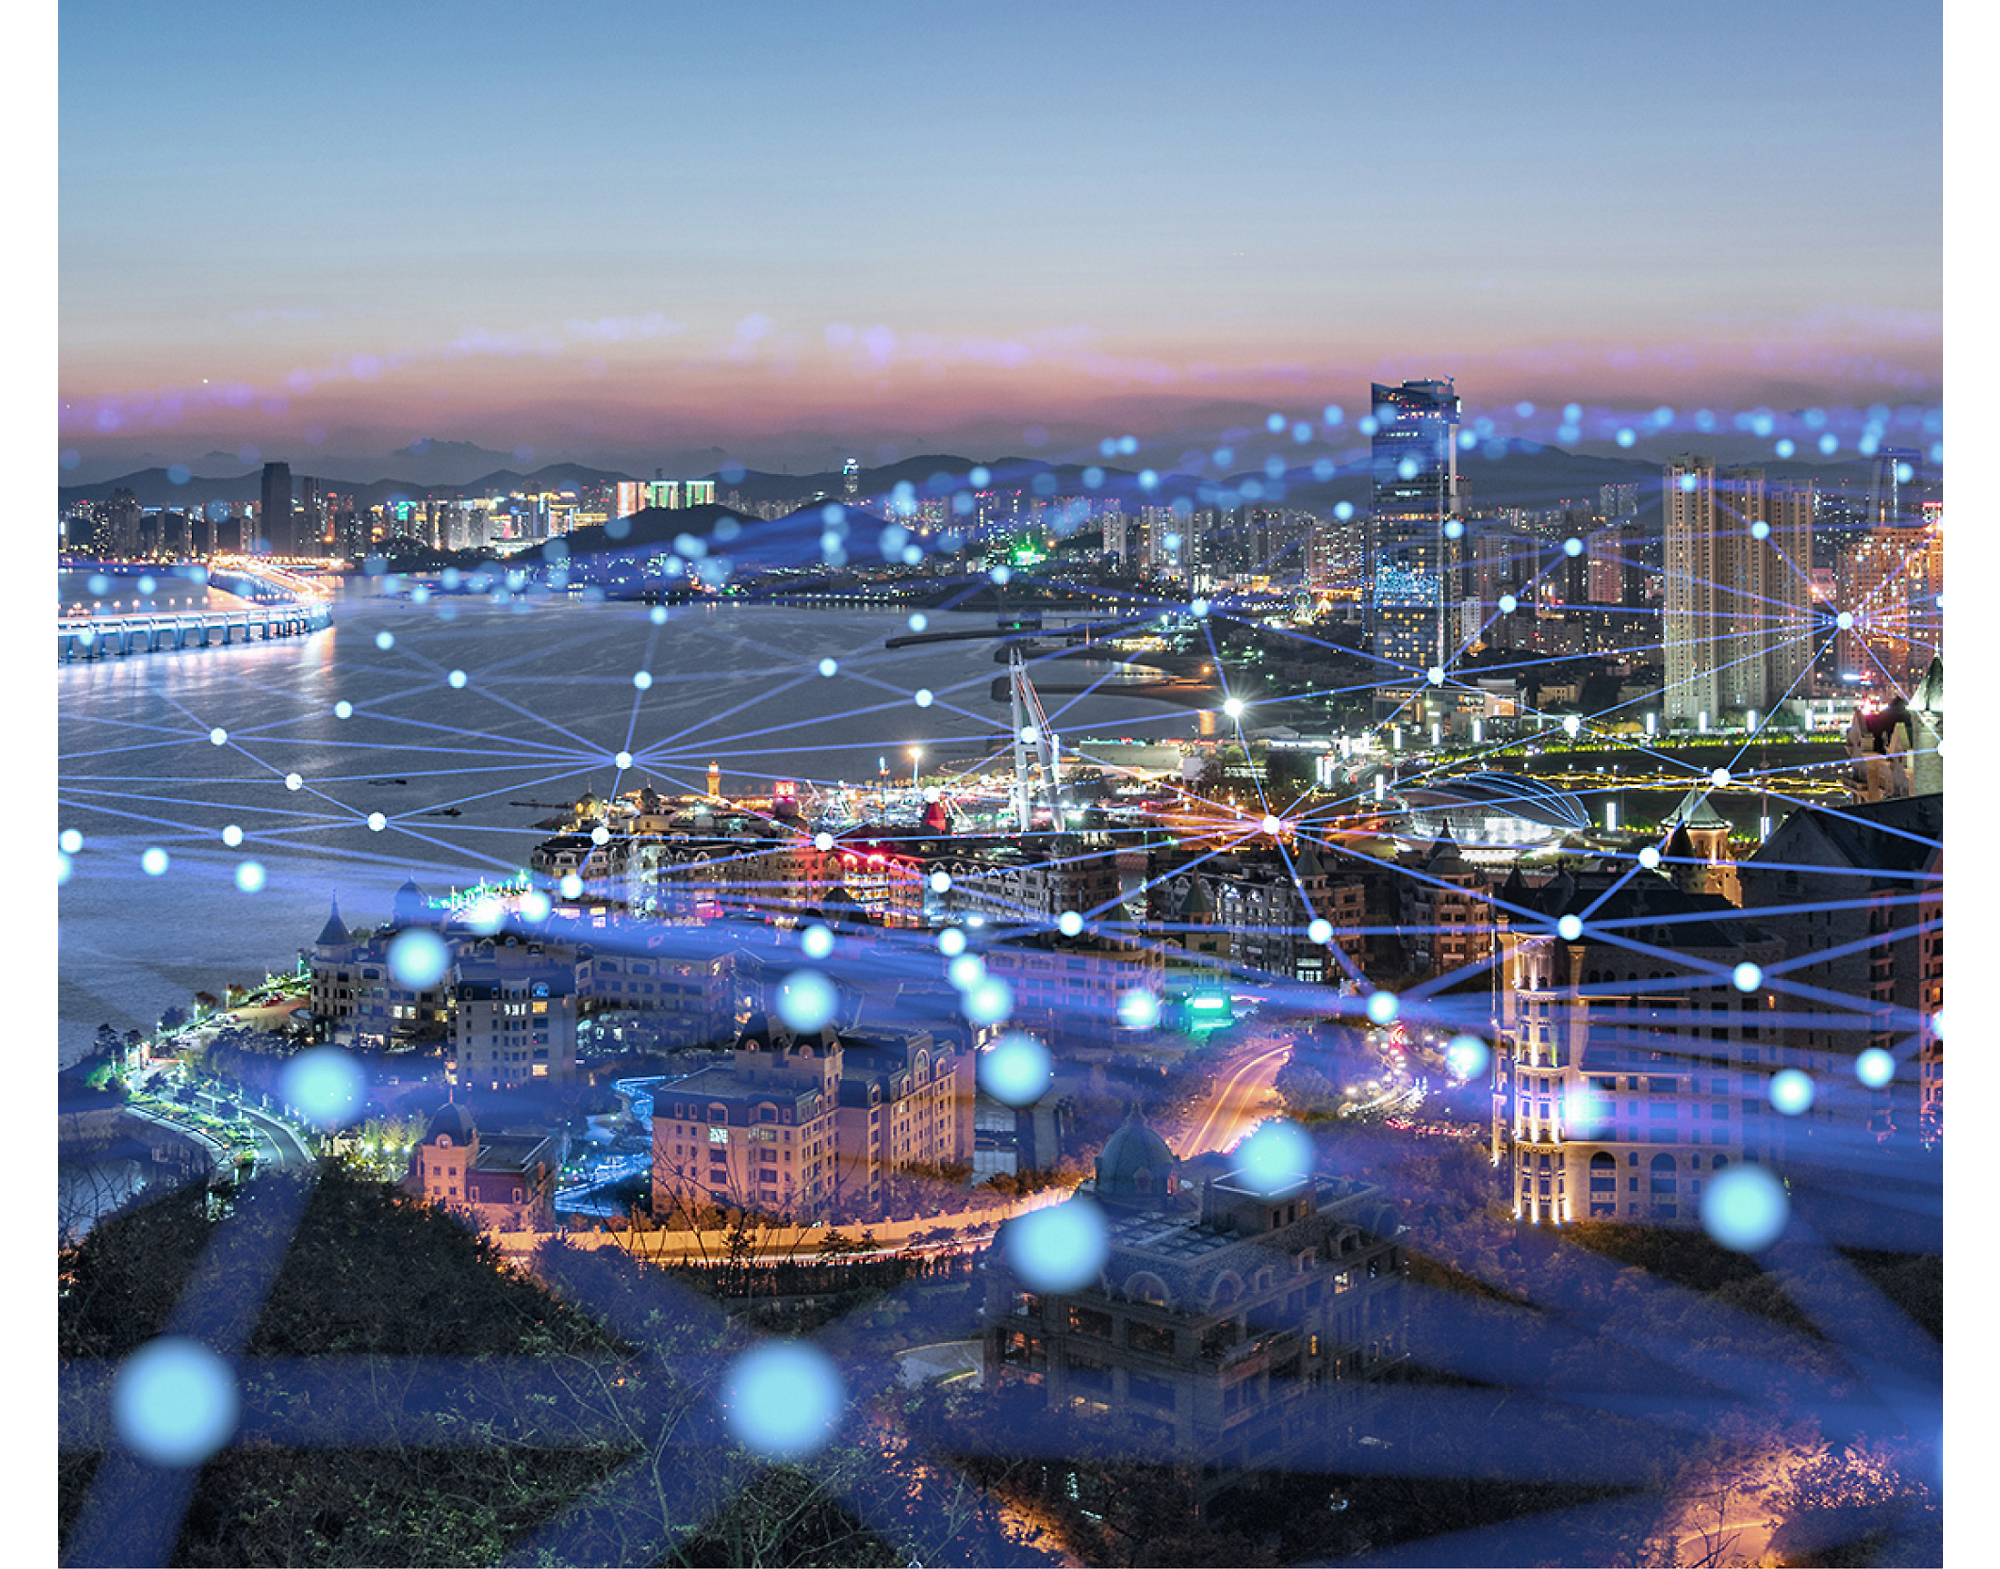 Vue aérienne d’une ville côtière au crépuscule, présentant des rues et des bâtiments éclairés, recouverts d’une grille de réseau numérique lumineuse.